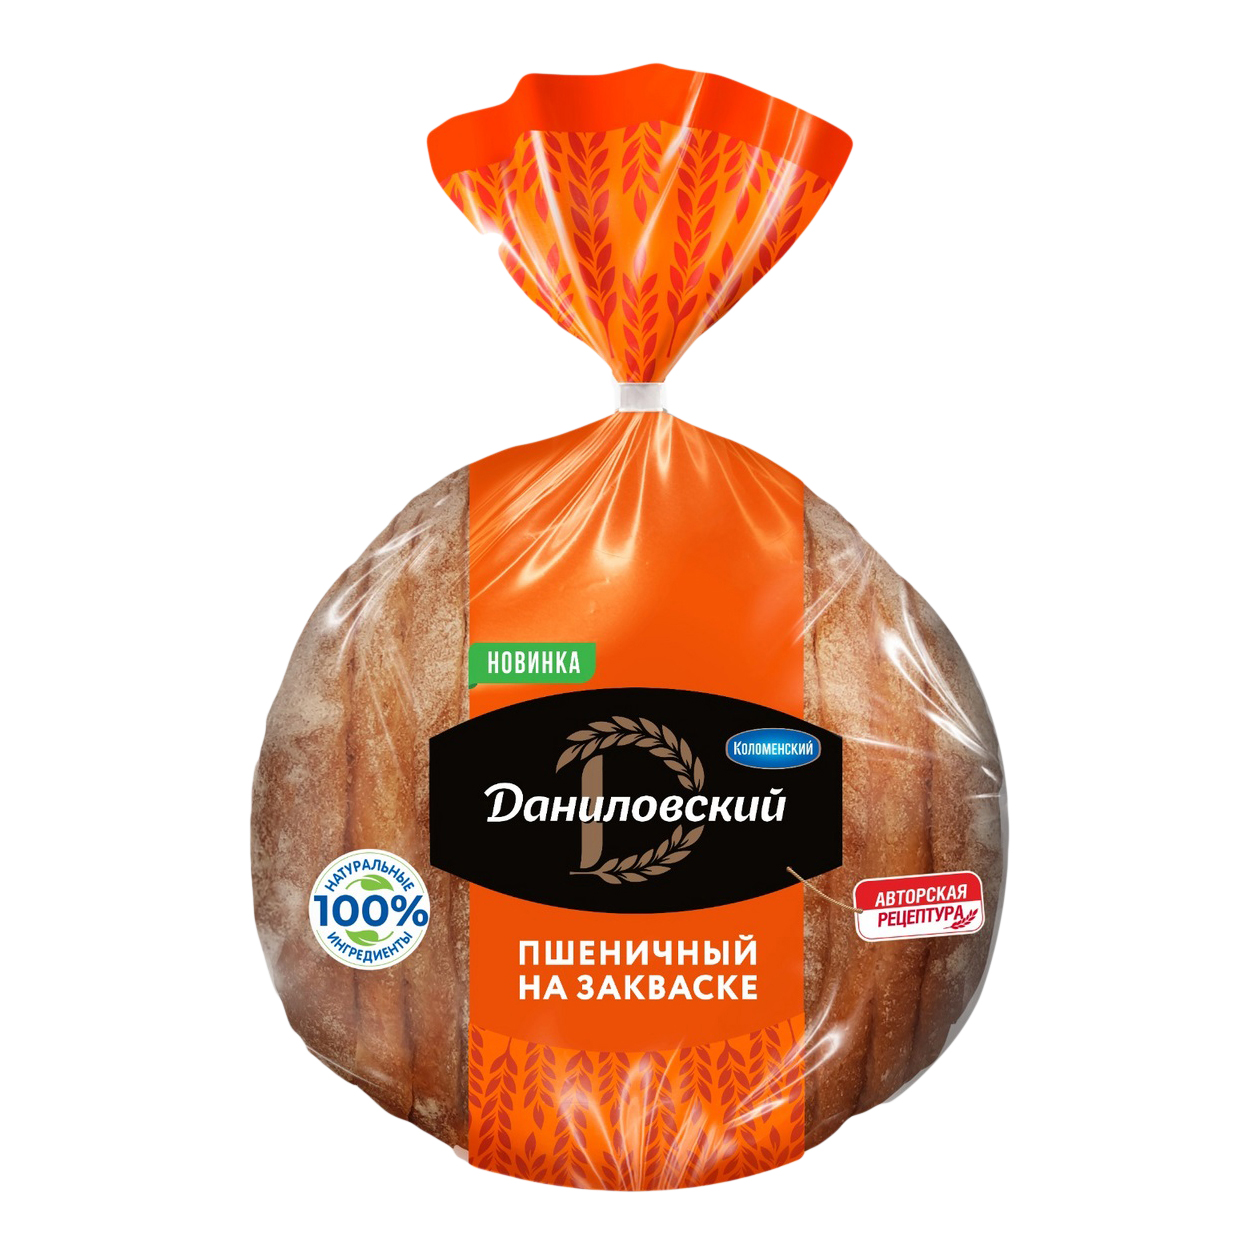 Хлеб Коломенское Даниловский пшеничный нарезанный 400 г